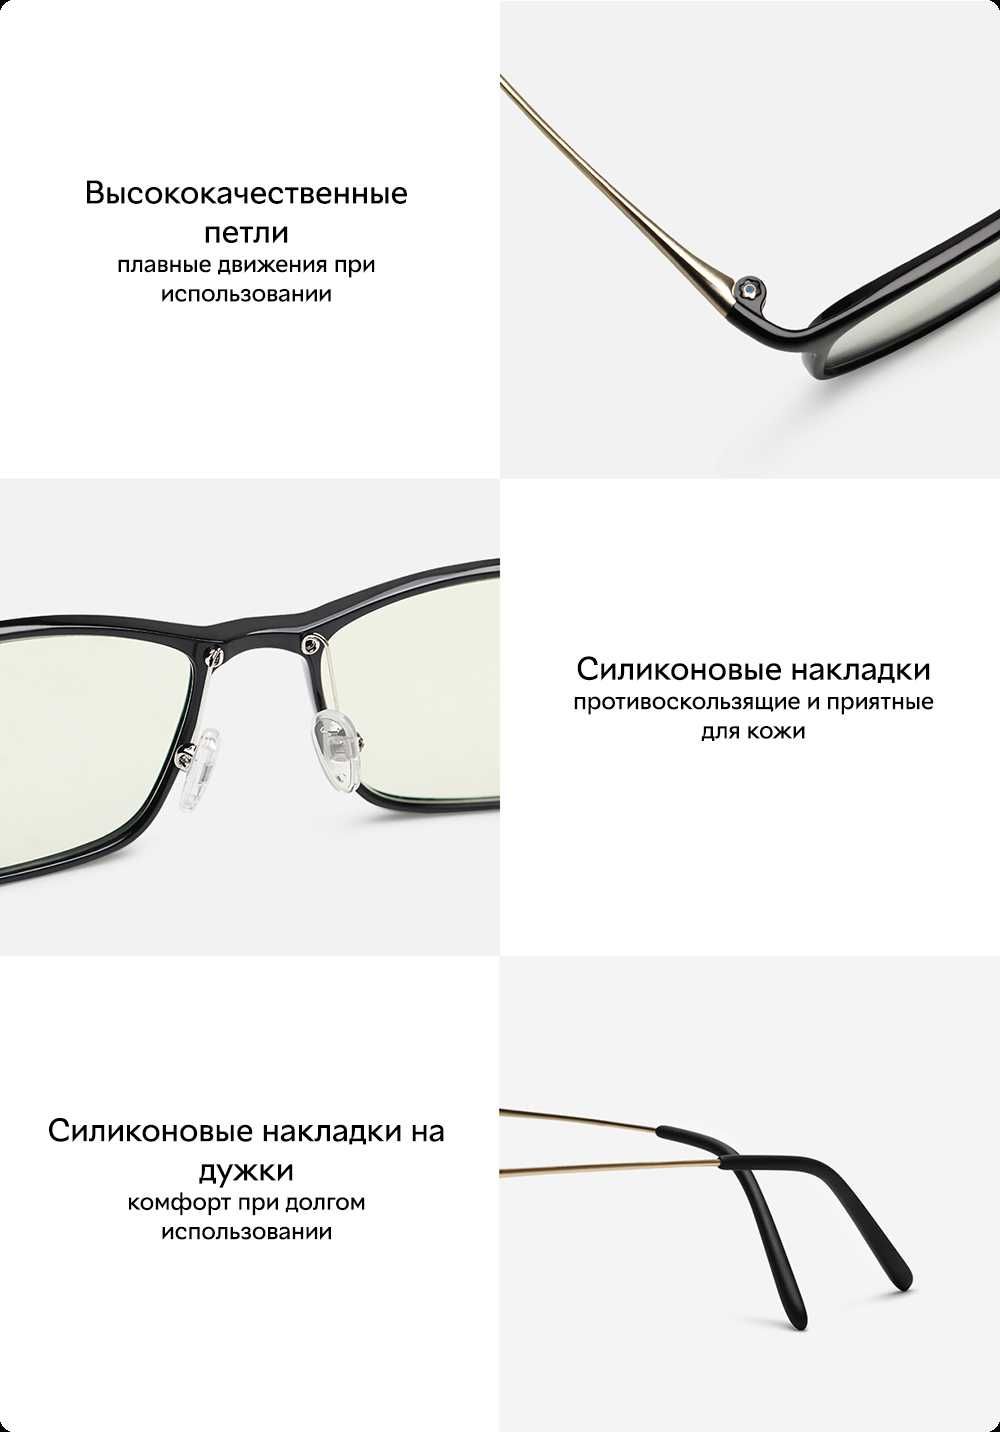 Очки компьютерные Xiaomi Mi Computer Glasses HMJ01TS Black, 80% защита